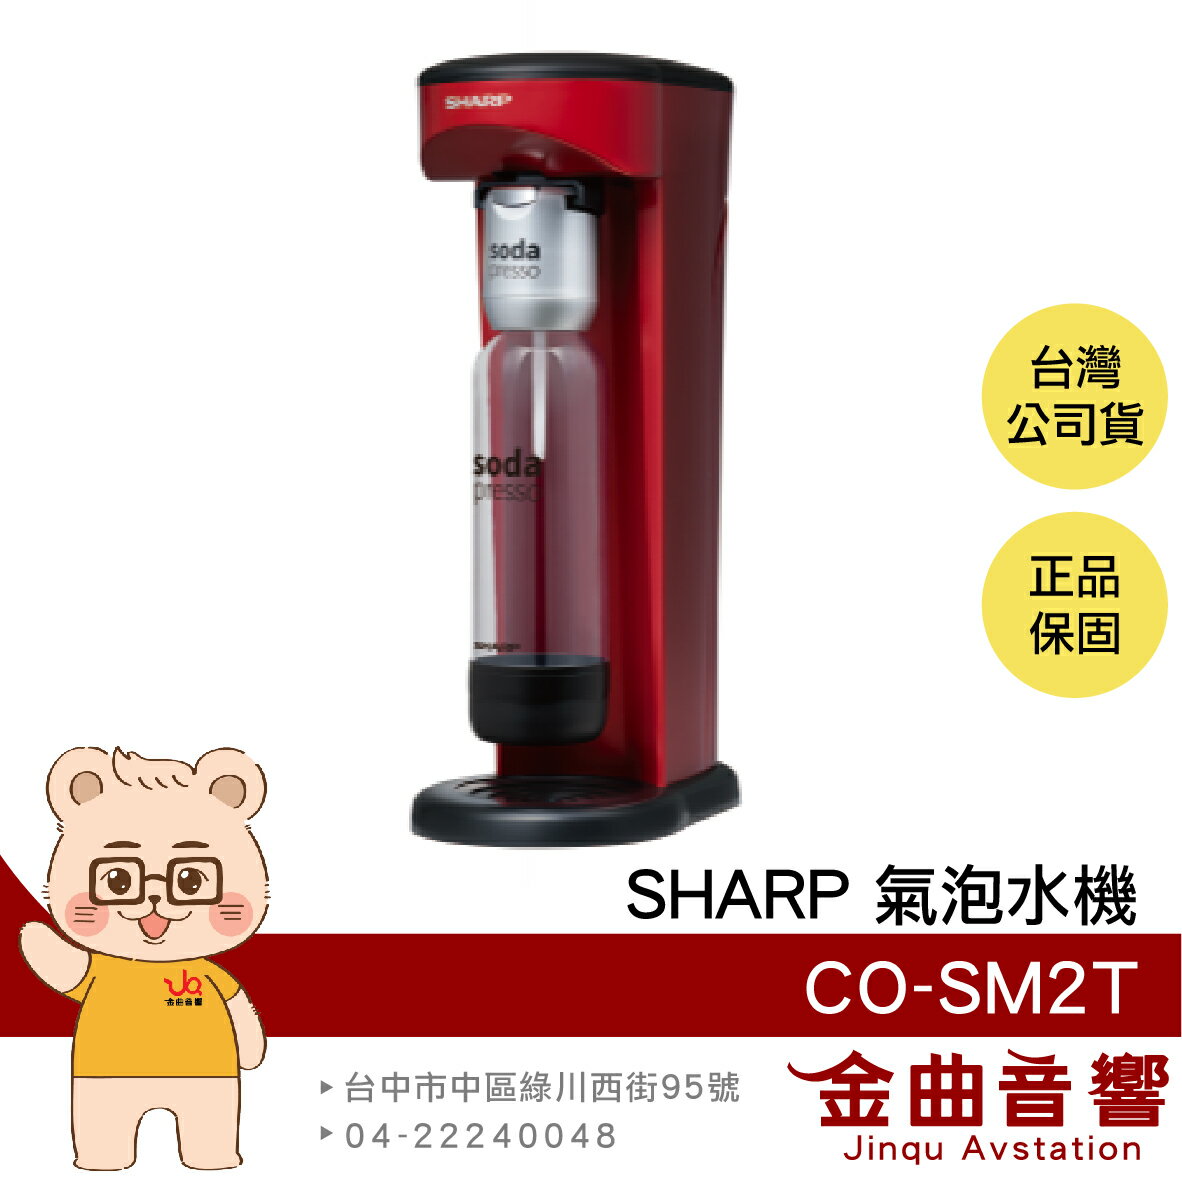 SHARP 夏普 CO-SM2T 蕃茄紅 防爆裝置 輕鬆拆卸 耐壓水瓶 soda presso 氣泡水機 | 金曲音響